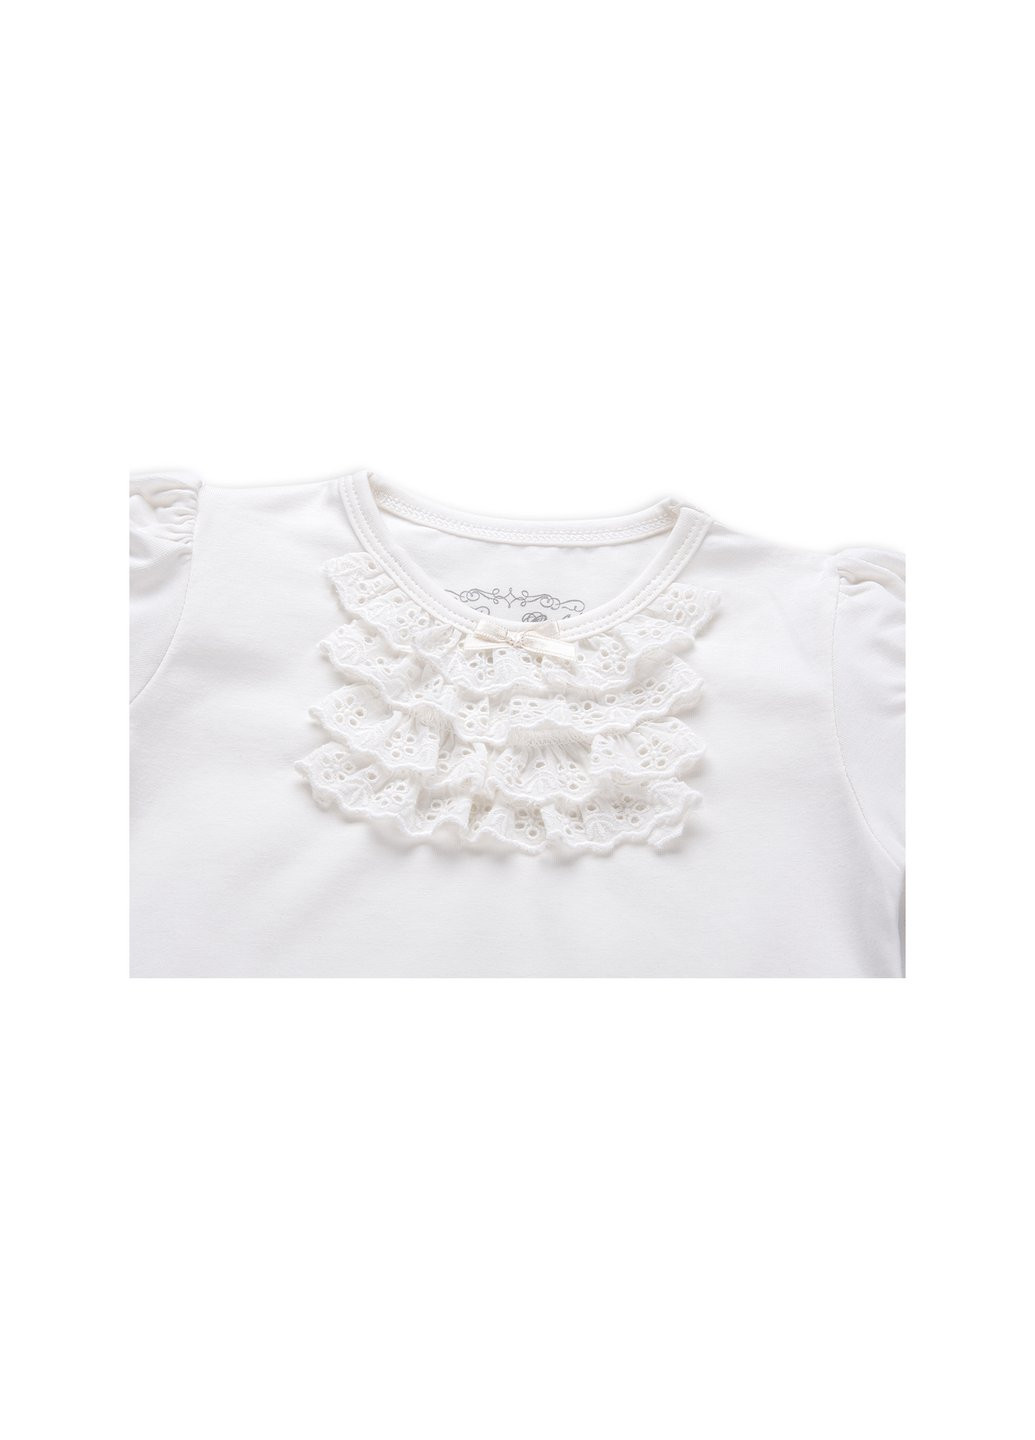 Комбинированная футболка детская с кружевными рюшами (6640-86g-cream) Breeze